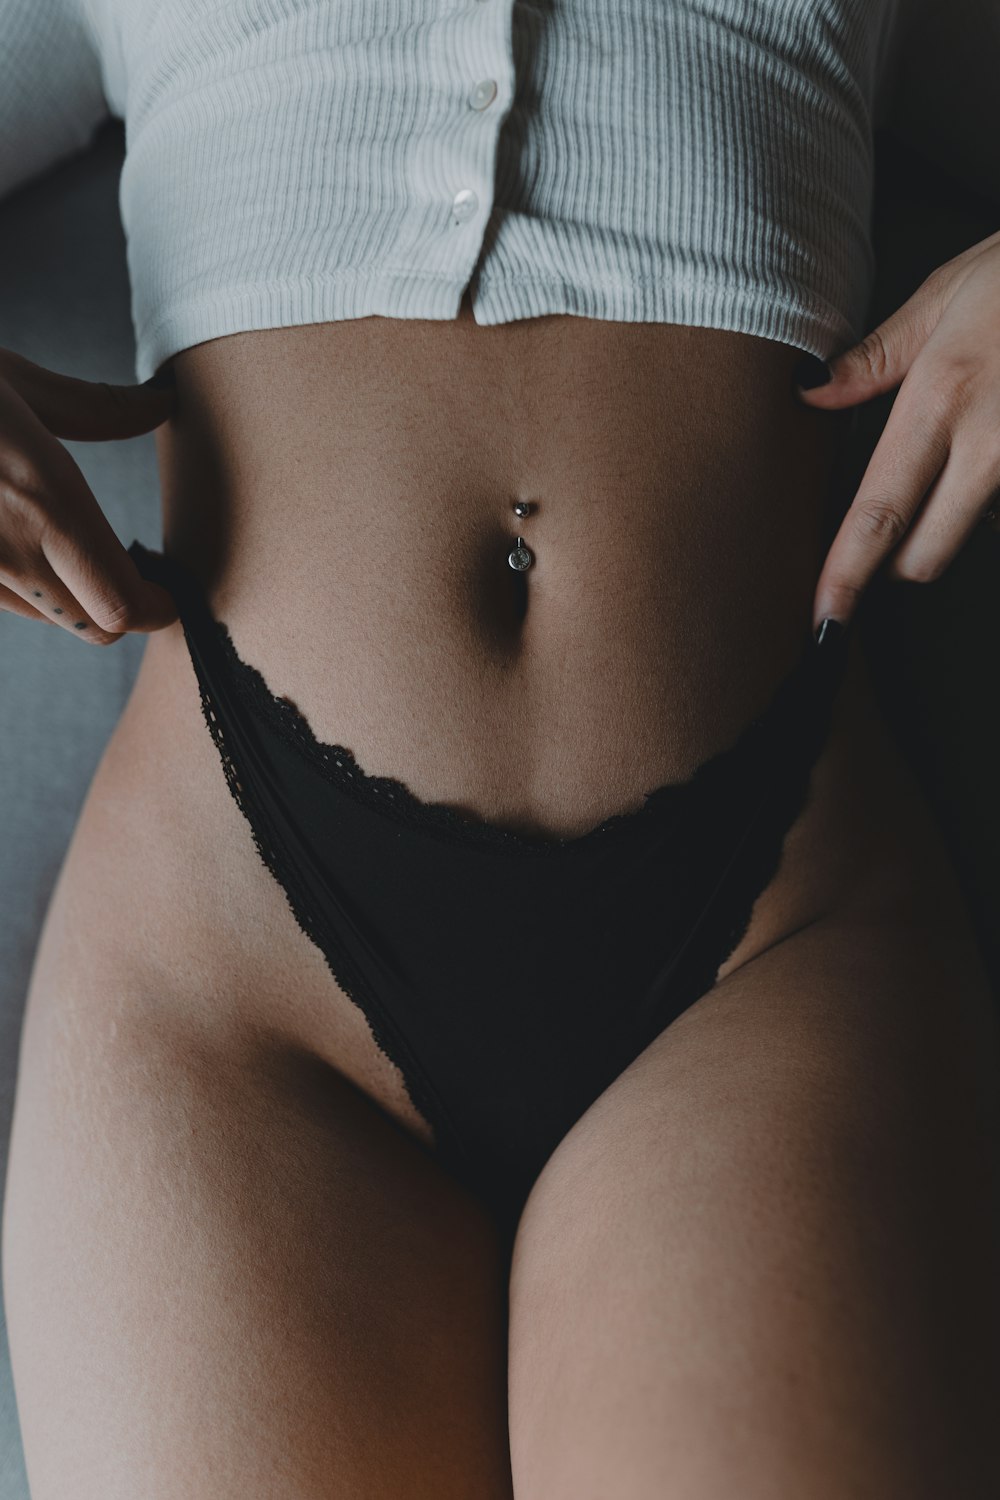 Foto mujer en panty negro acostada en la cama – Imagen Sensual gratis en  Unsplash